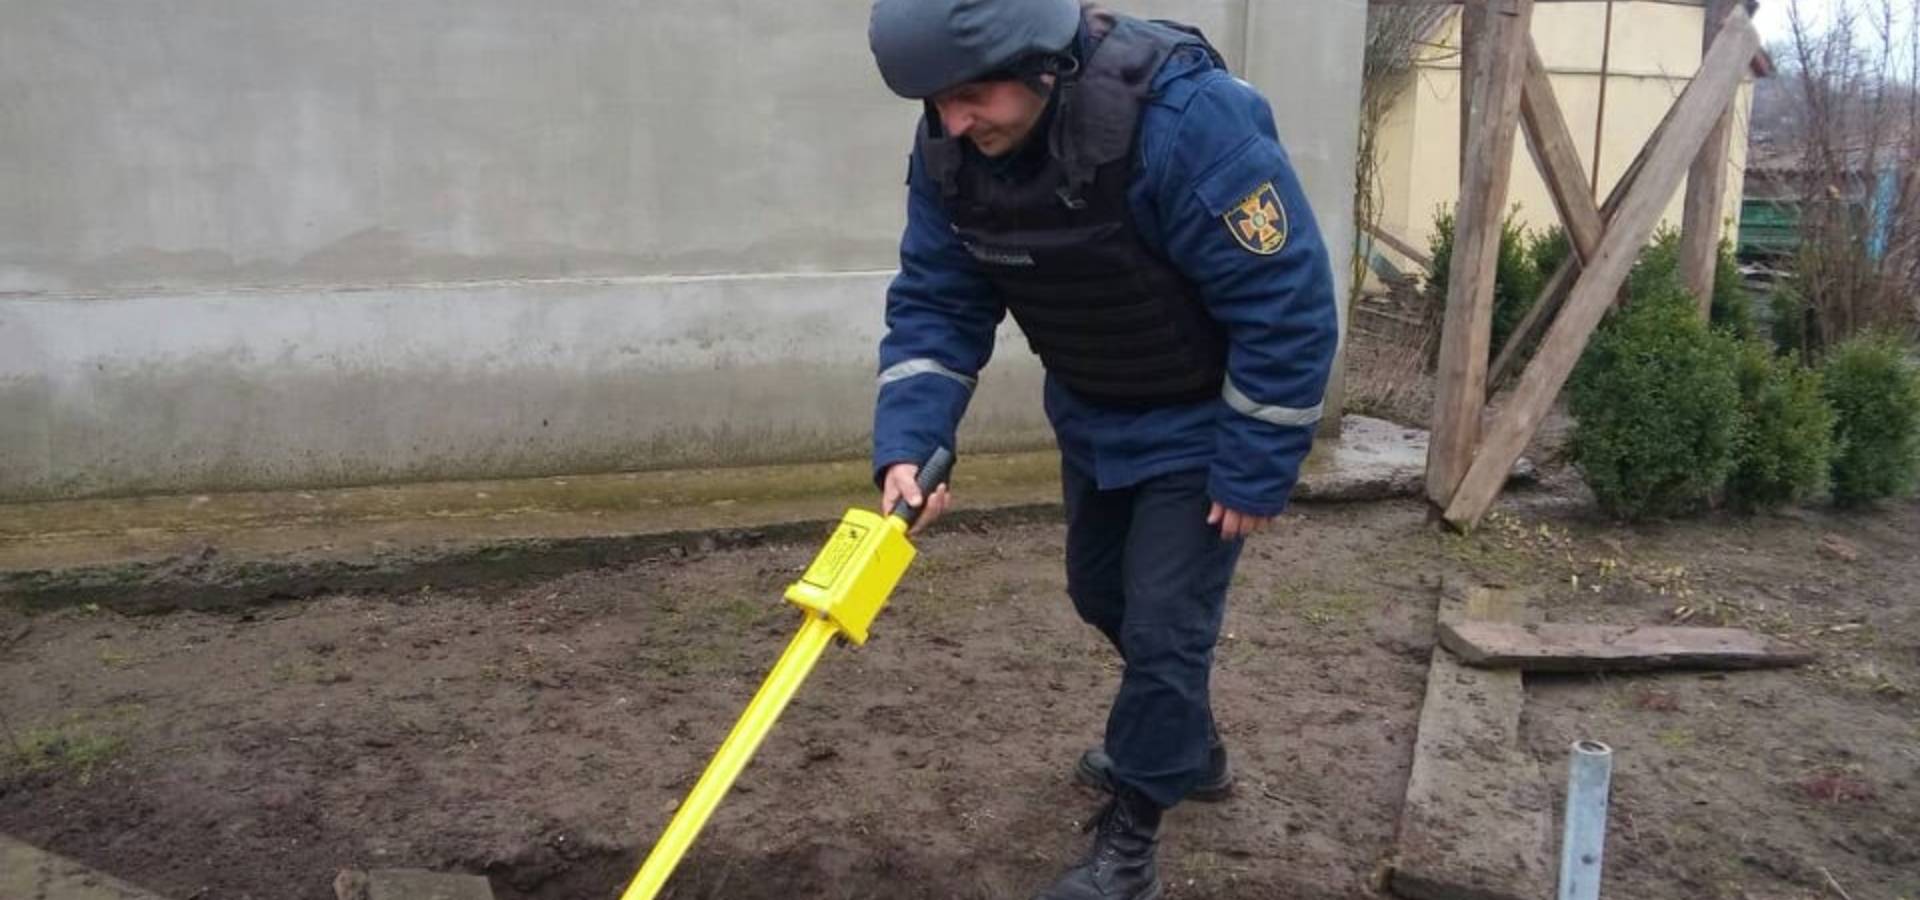 Артилерійський снаряд знайшли та знищили у приватному господарстві в Пагурцях Хмільницького району на Вінниччині